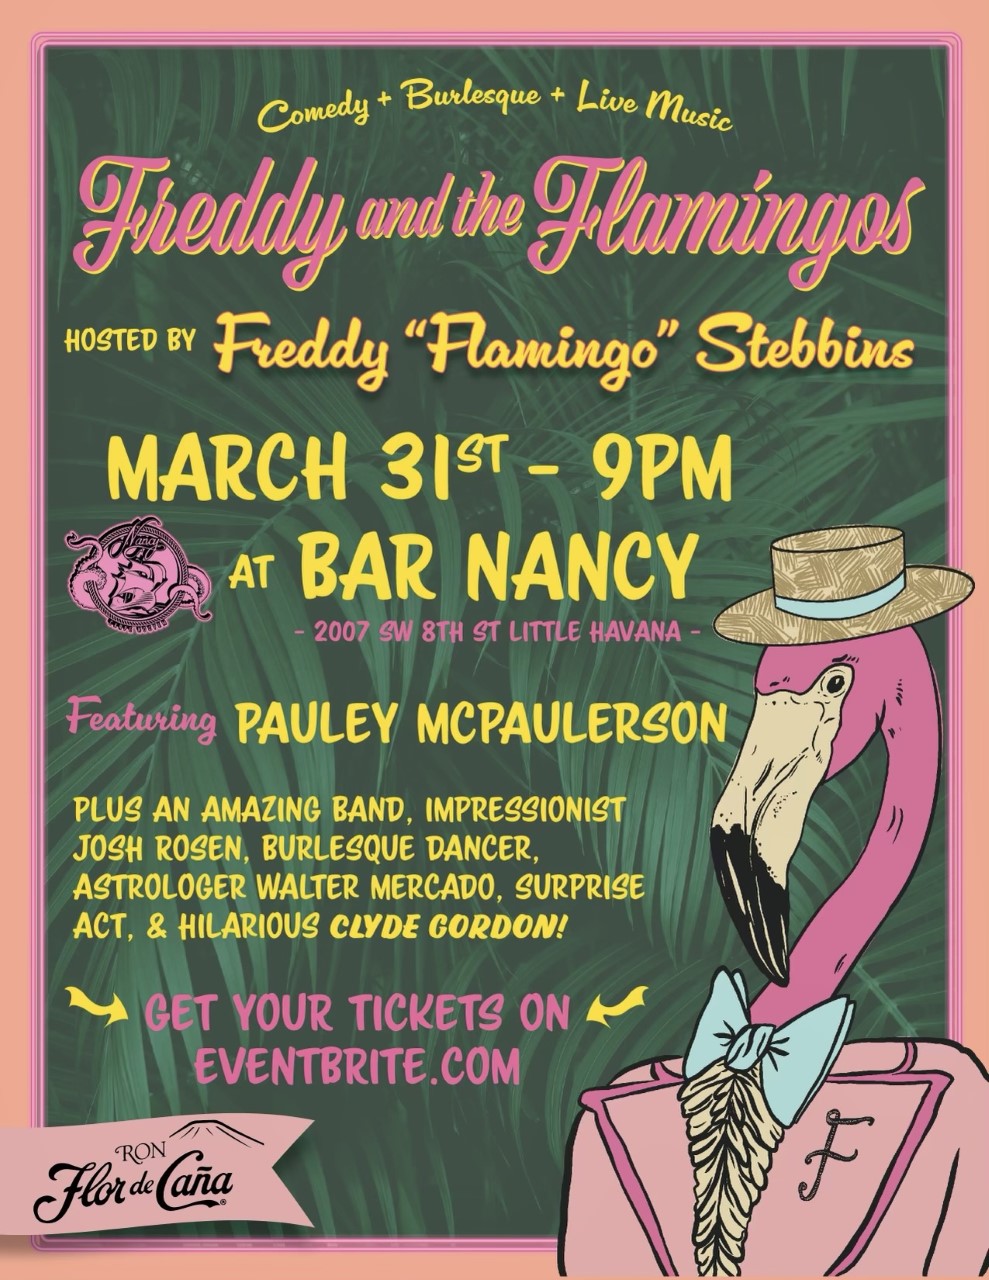 FREDDY AND THE FLAMINGOS AT BAR NANCY